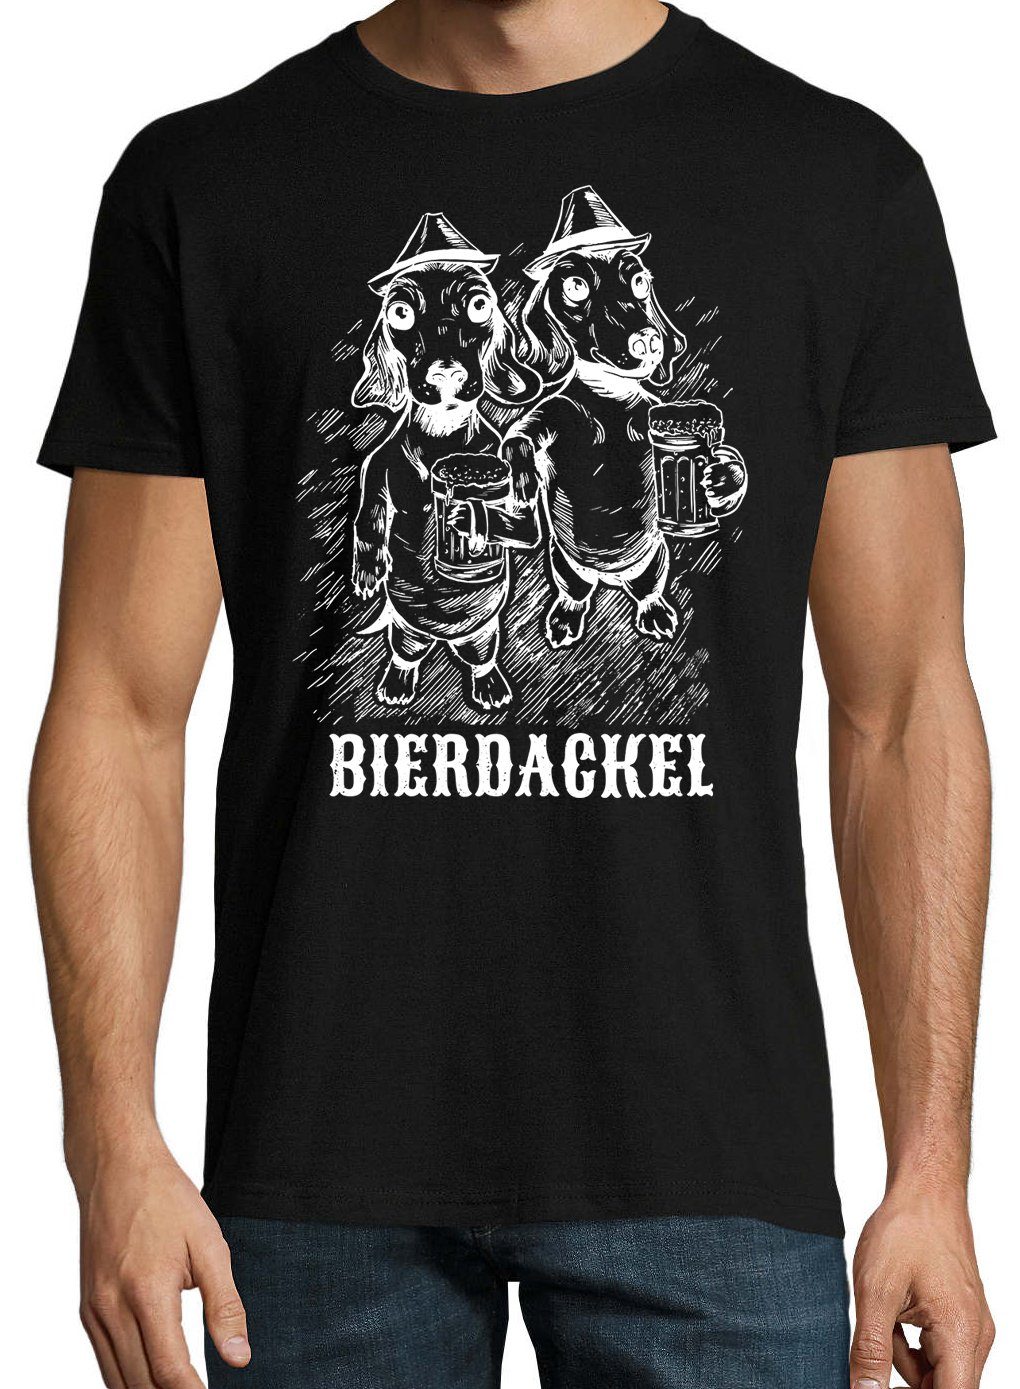 Schwarz Hunde mit Frontprint Youth trenigdem Designz Herren Dackel Shirt T-Shirt Bier